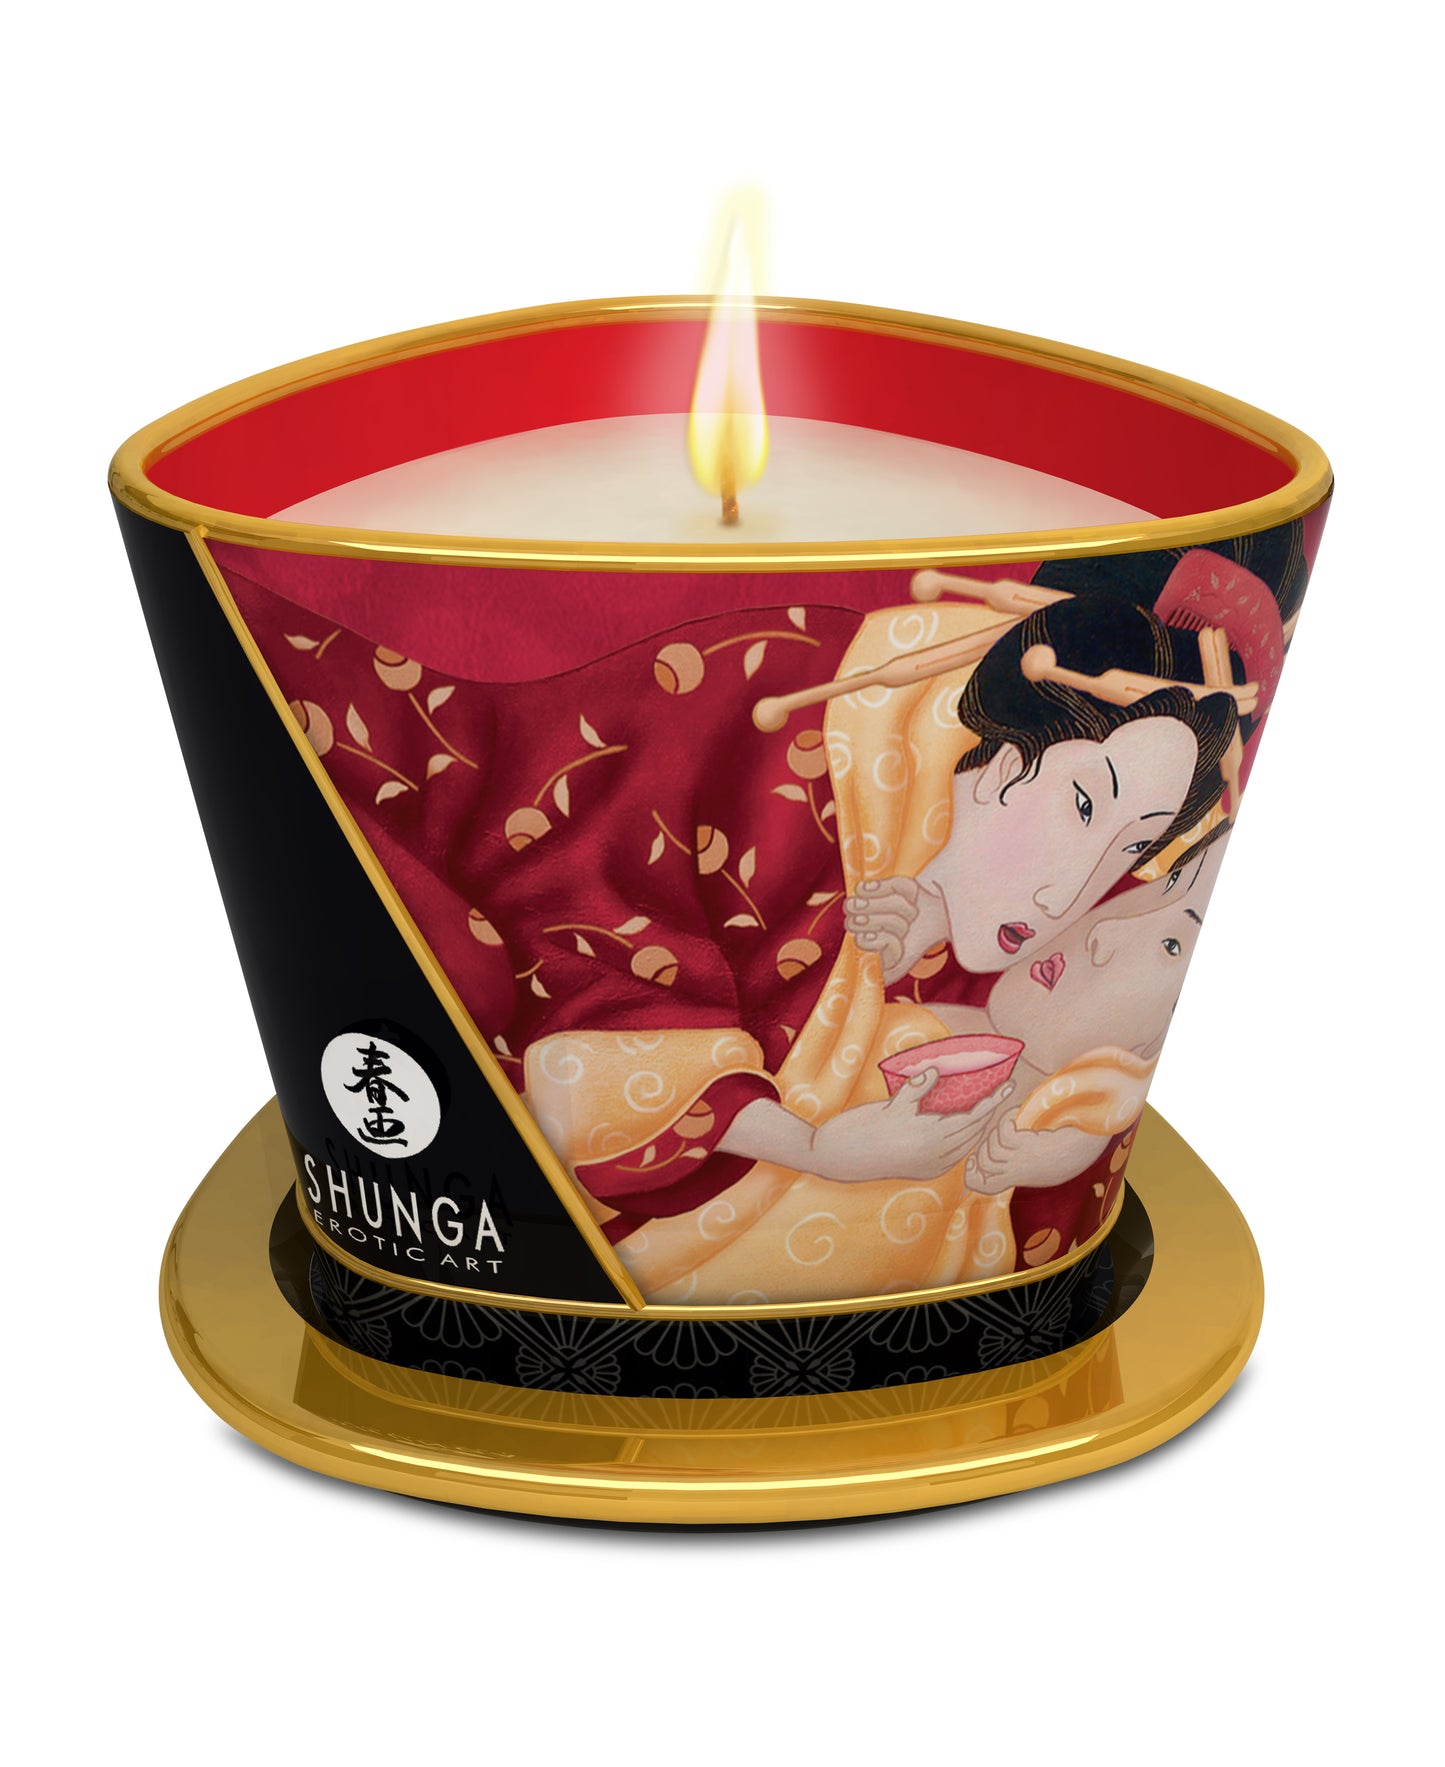 Shunga Massage Candle